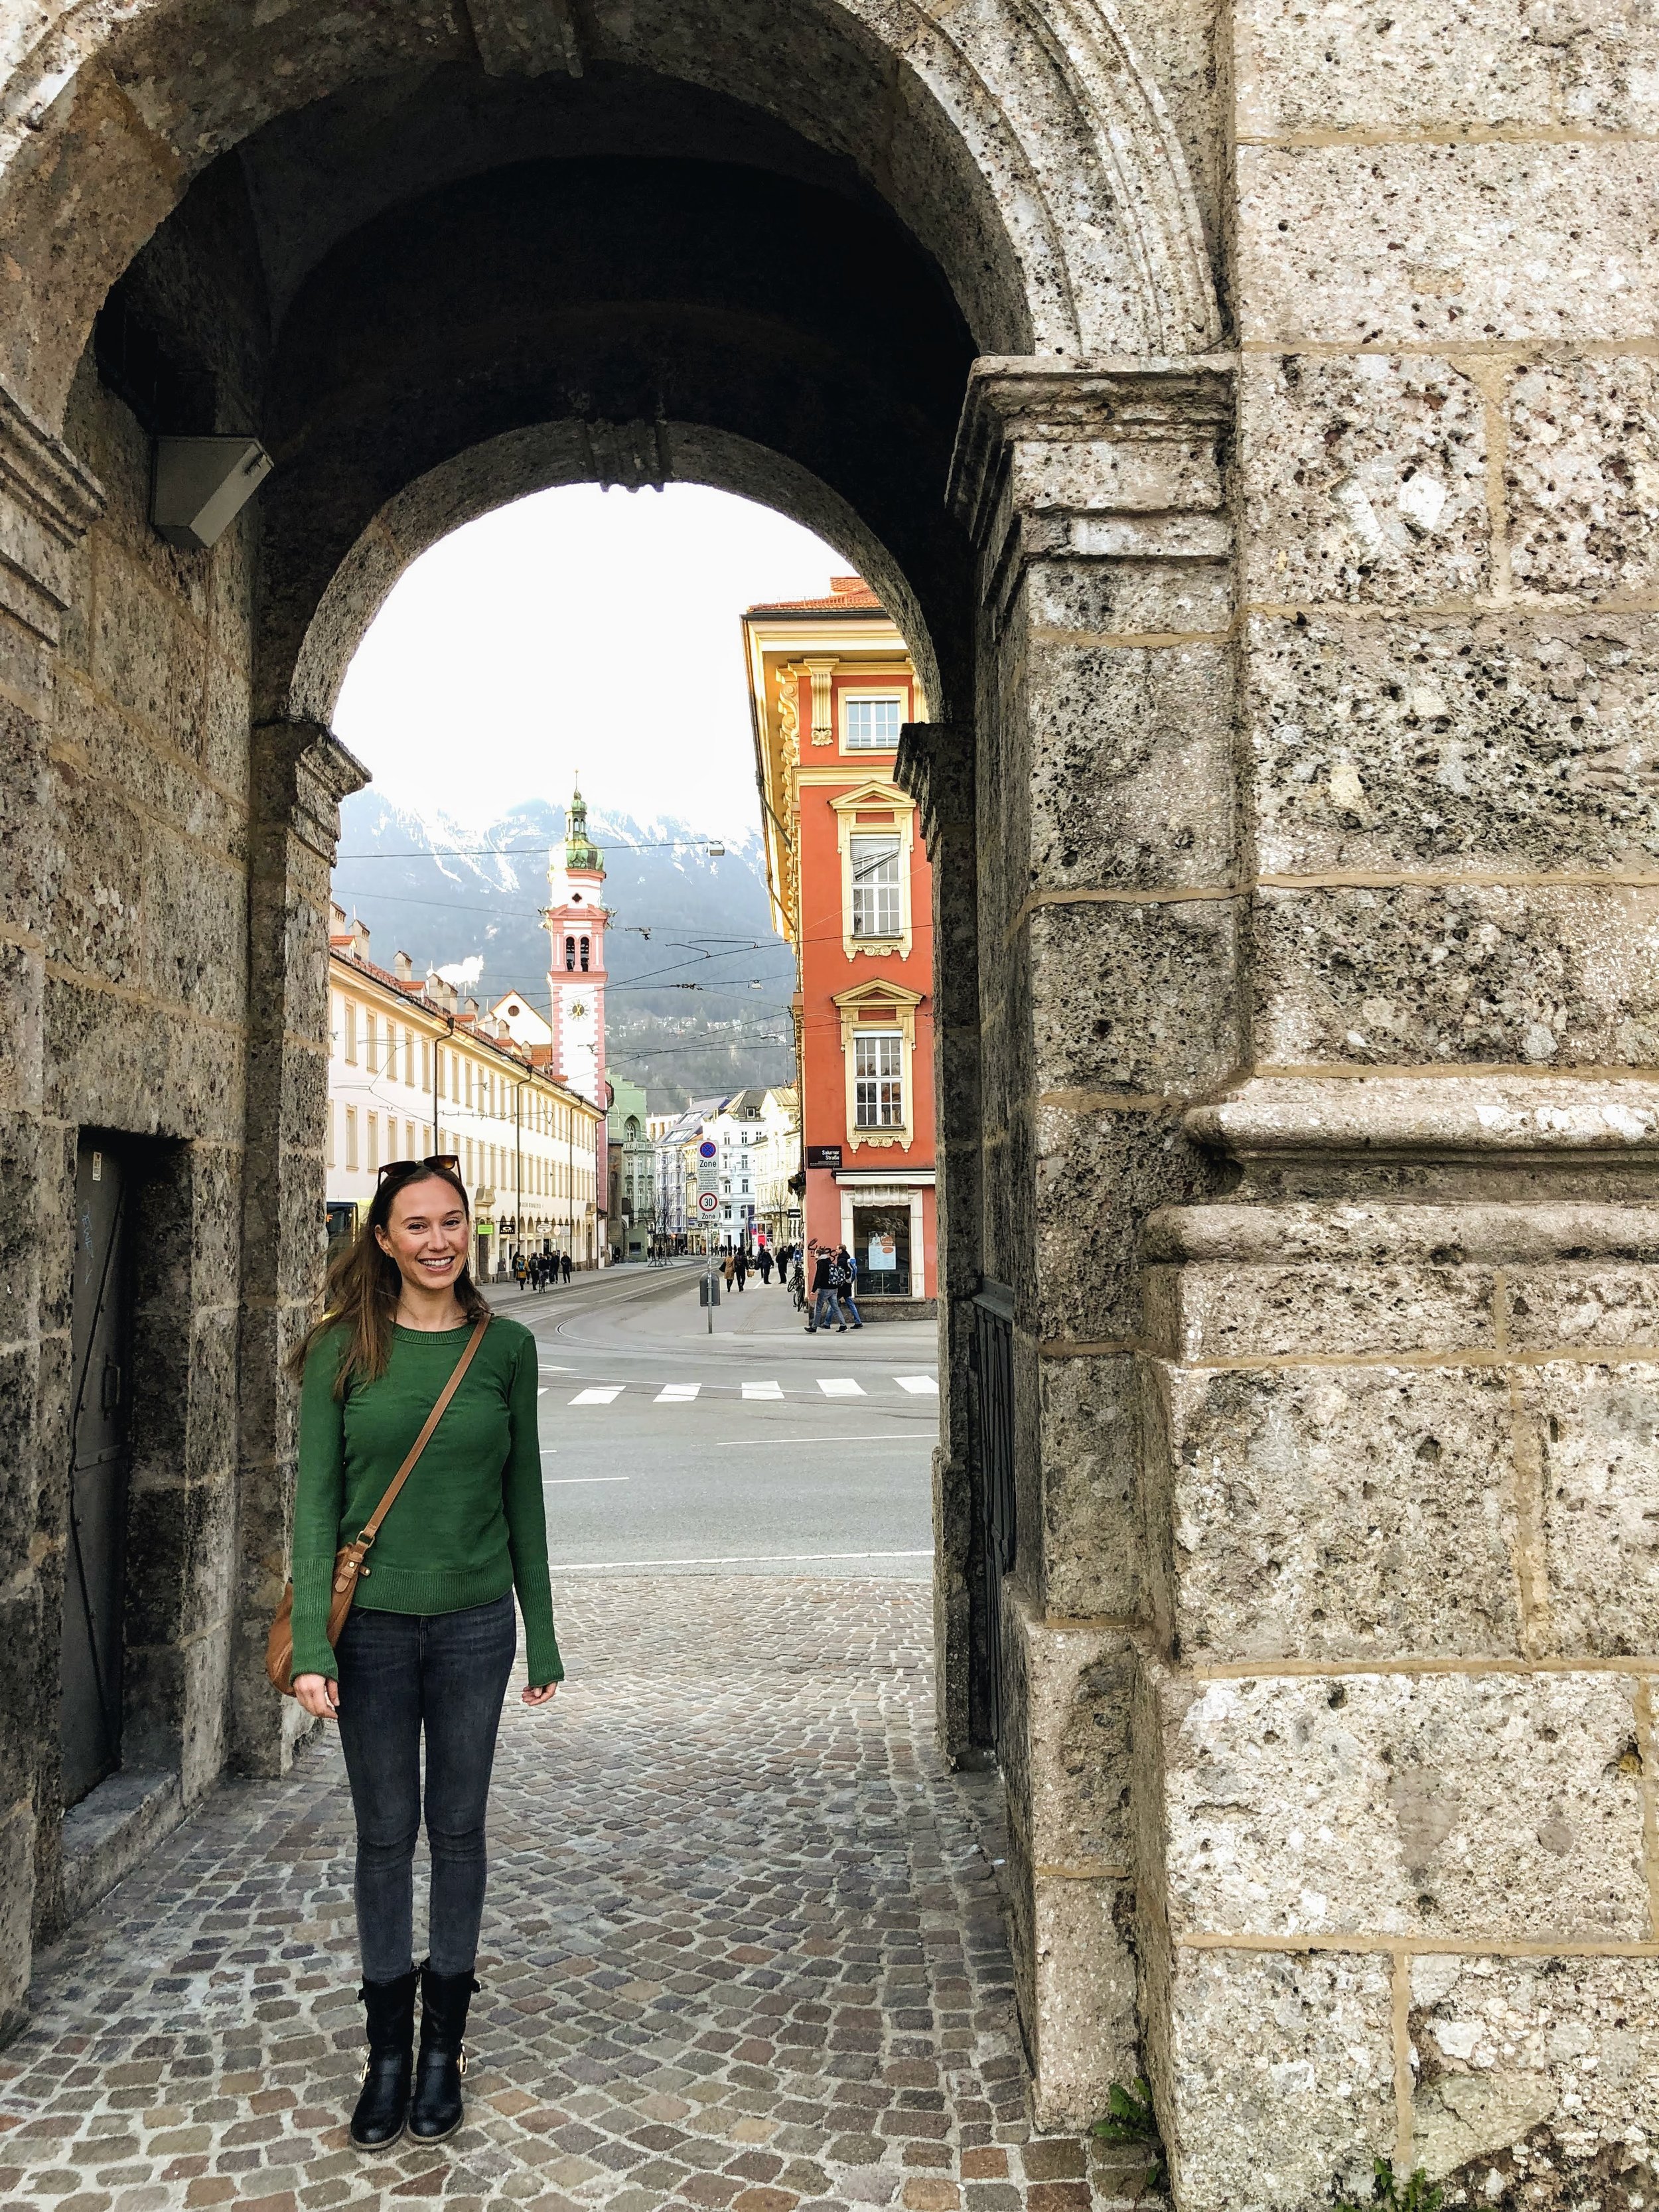 Under the Triumphal Arch in Innsbruck Austria